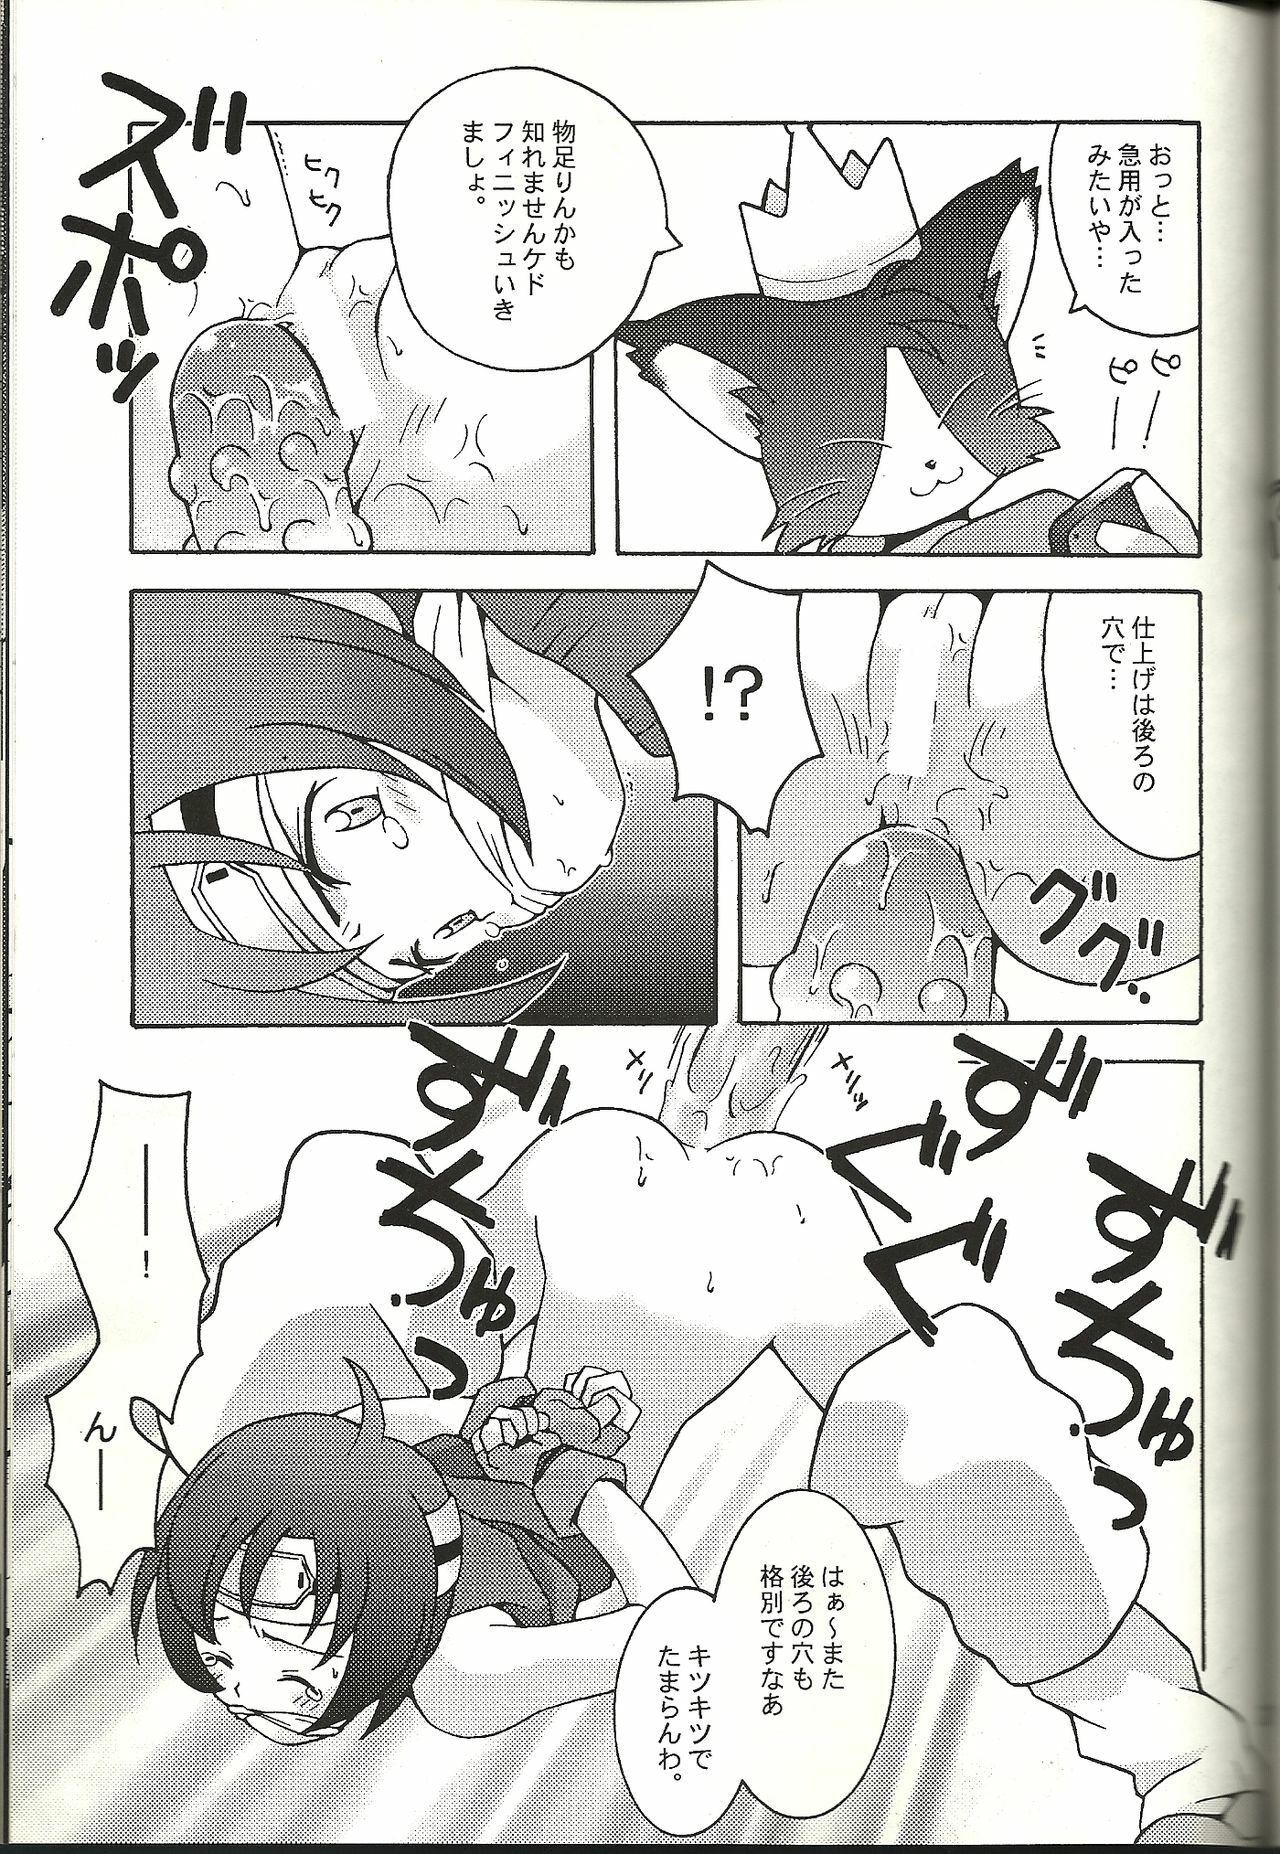 (CR21) [Bakuhatsu BRS. (B.Tarou)] Renai Shiyou (Final Fantasy VII) page 27 full